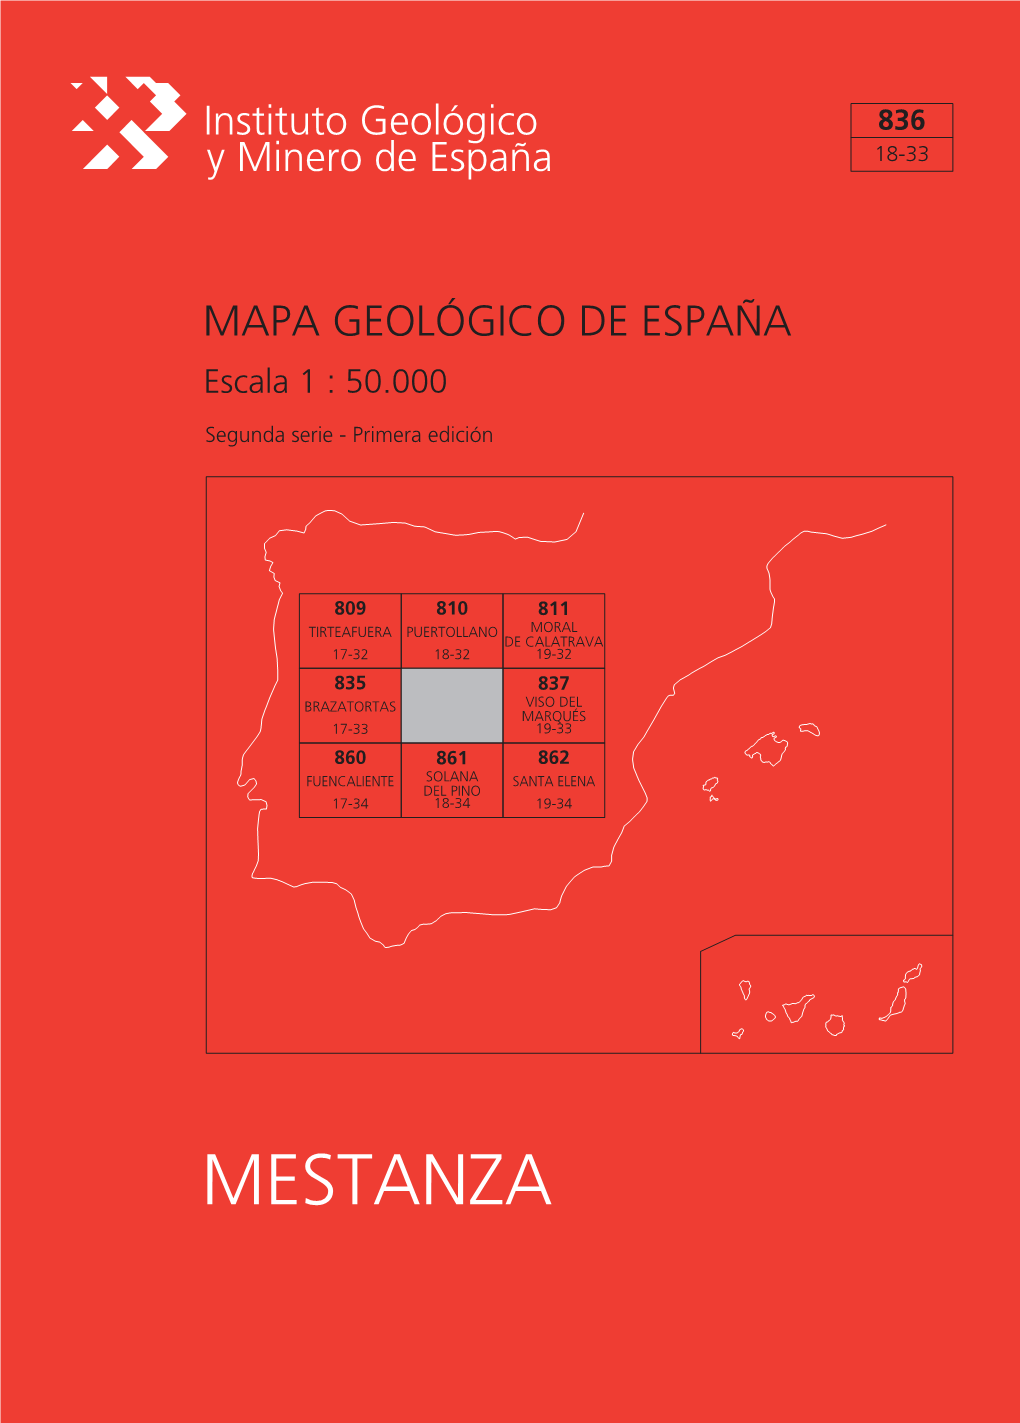 MESTANZA MAPA GEOLÓGICO DE ESPAÑA Escala 1:50.000